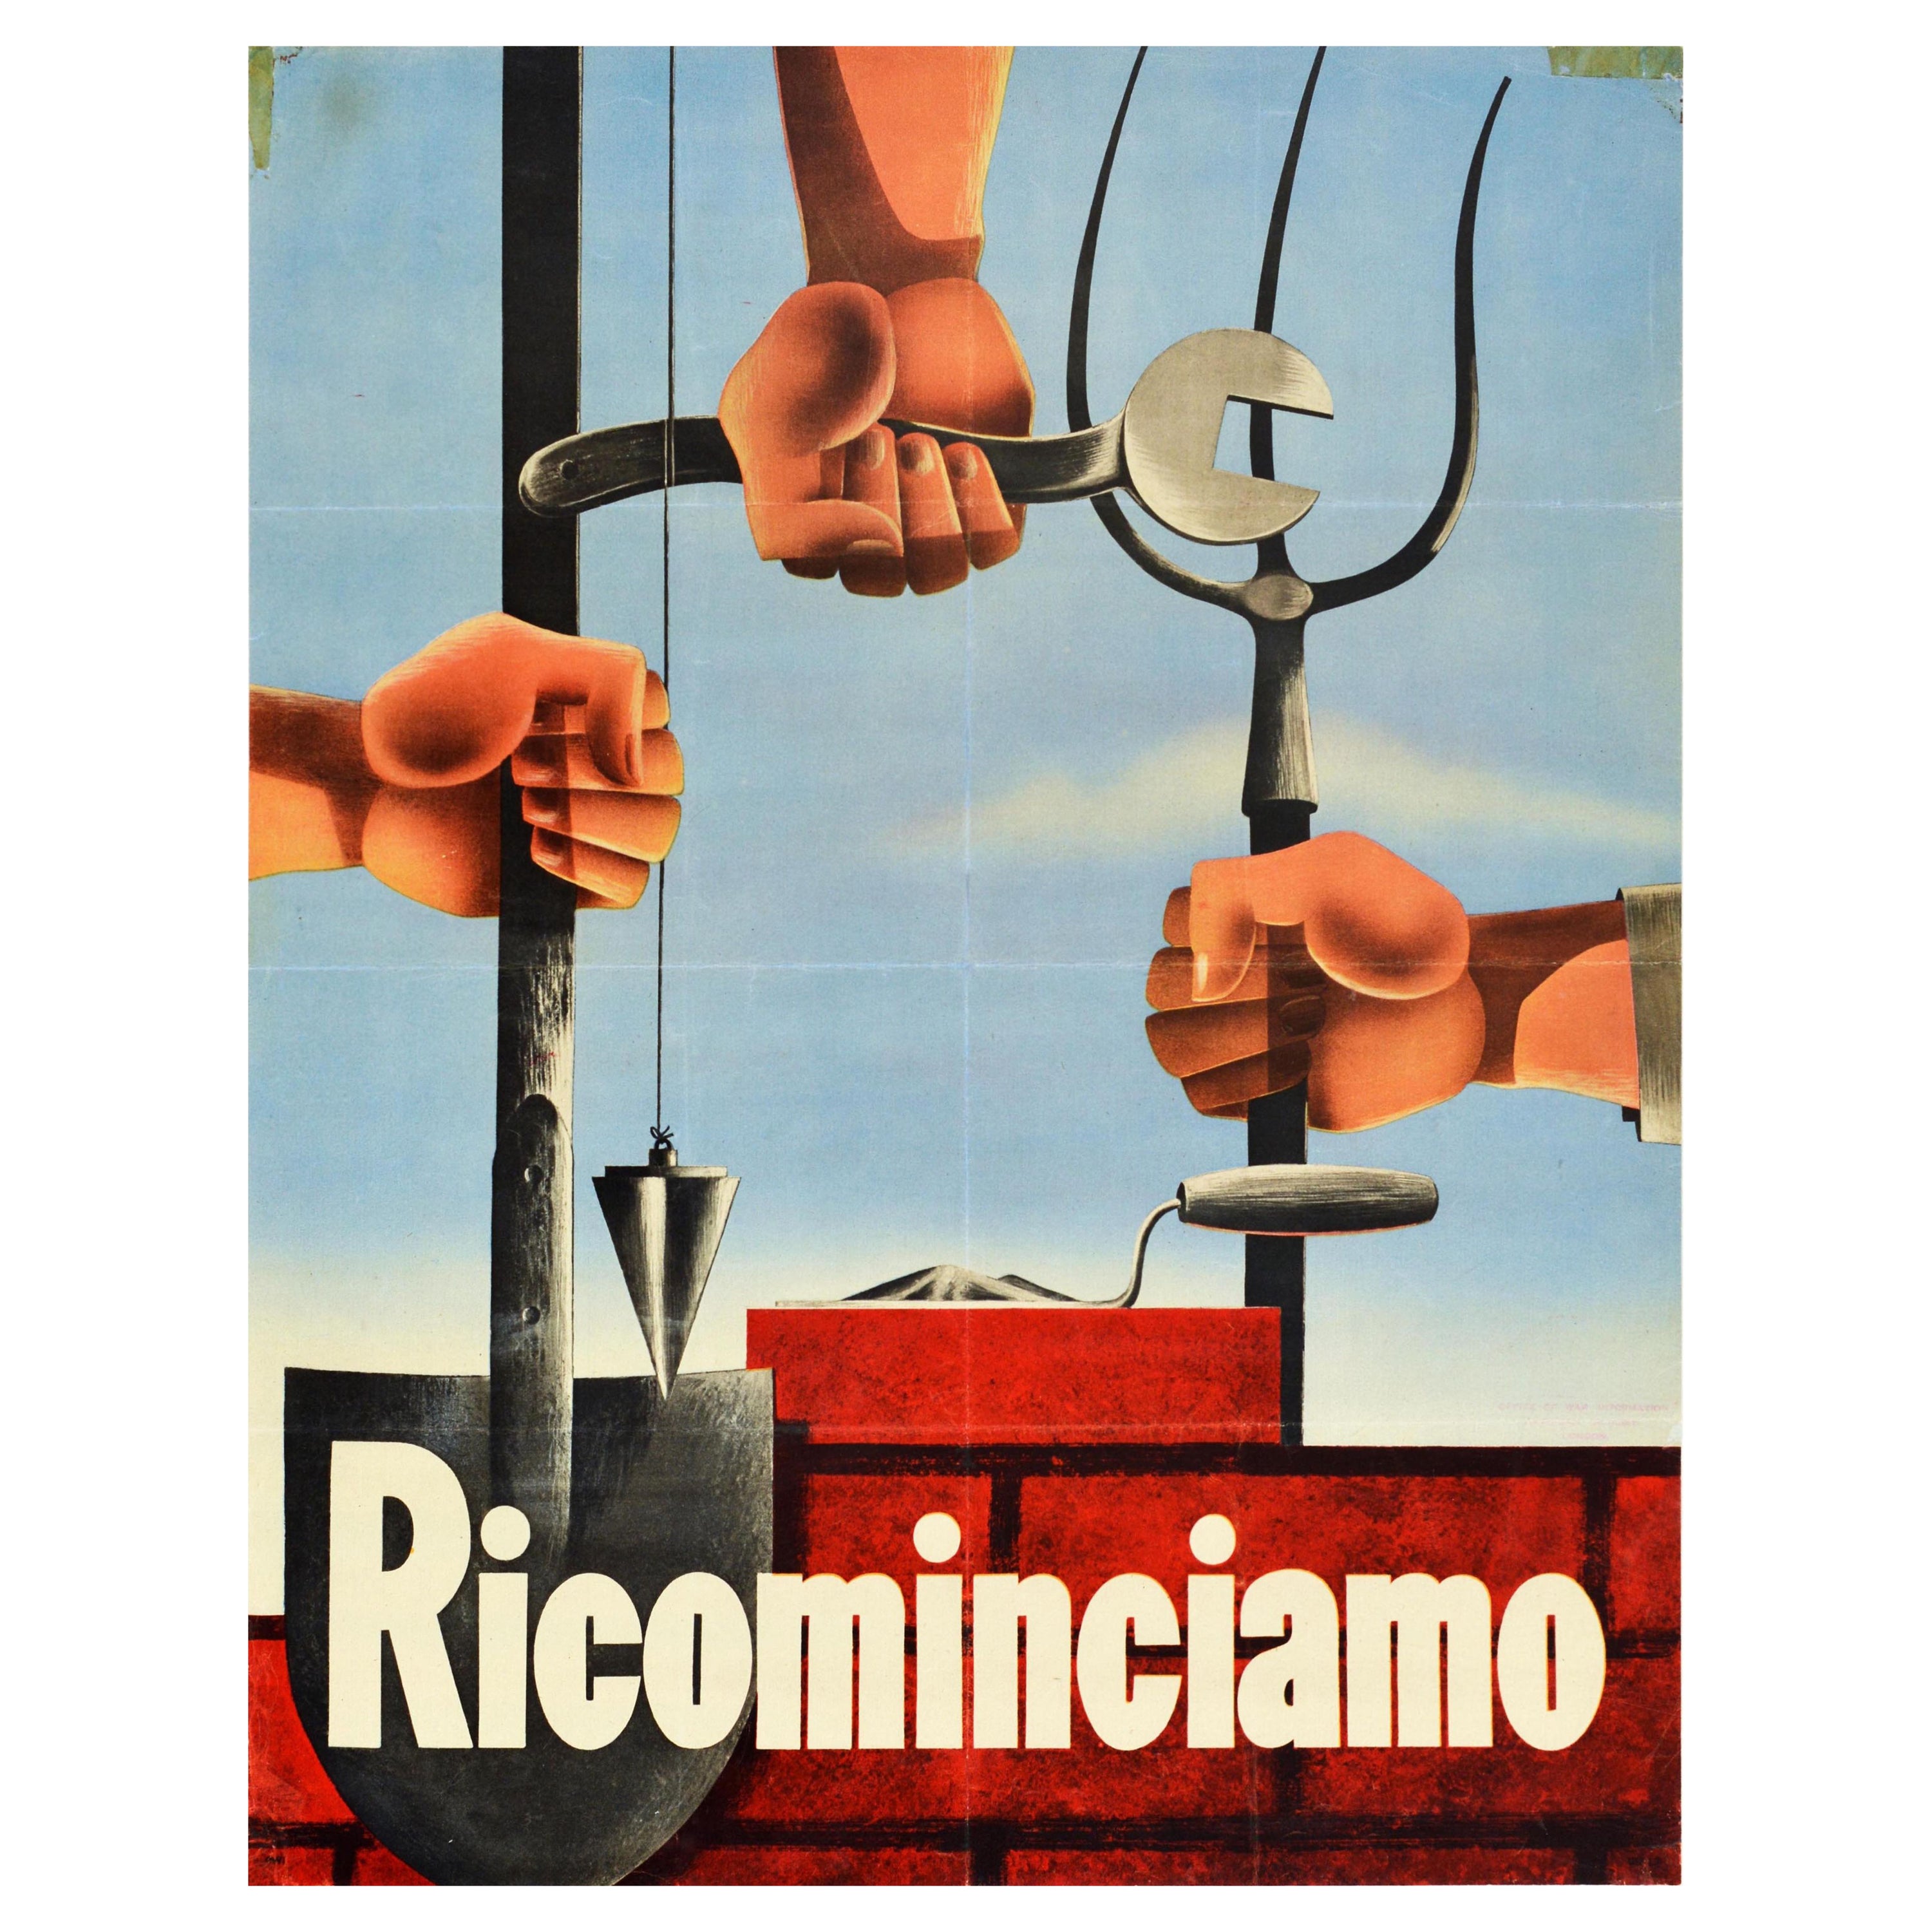 Affiche rétro originale de la Seconde Guerre mondiale, Ricominciamo reconstruit l'Italie, fermier agricole ouvrier en vente